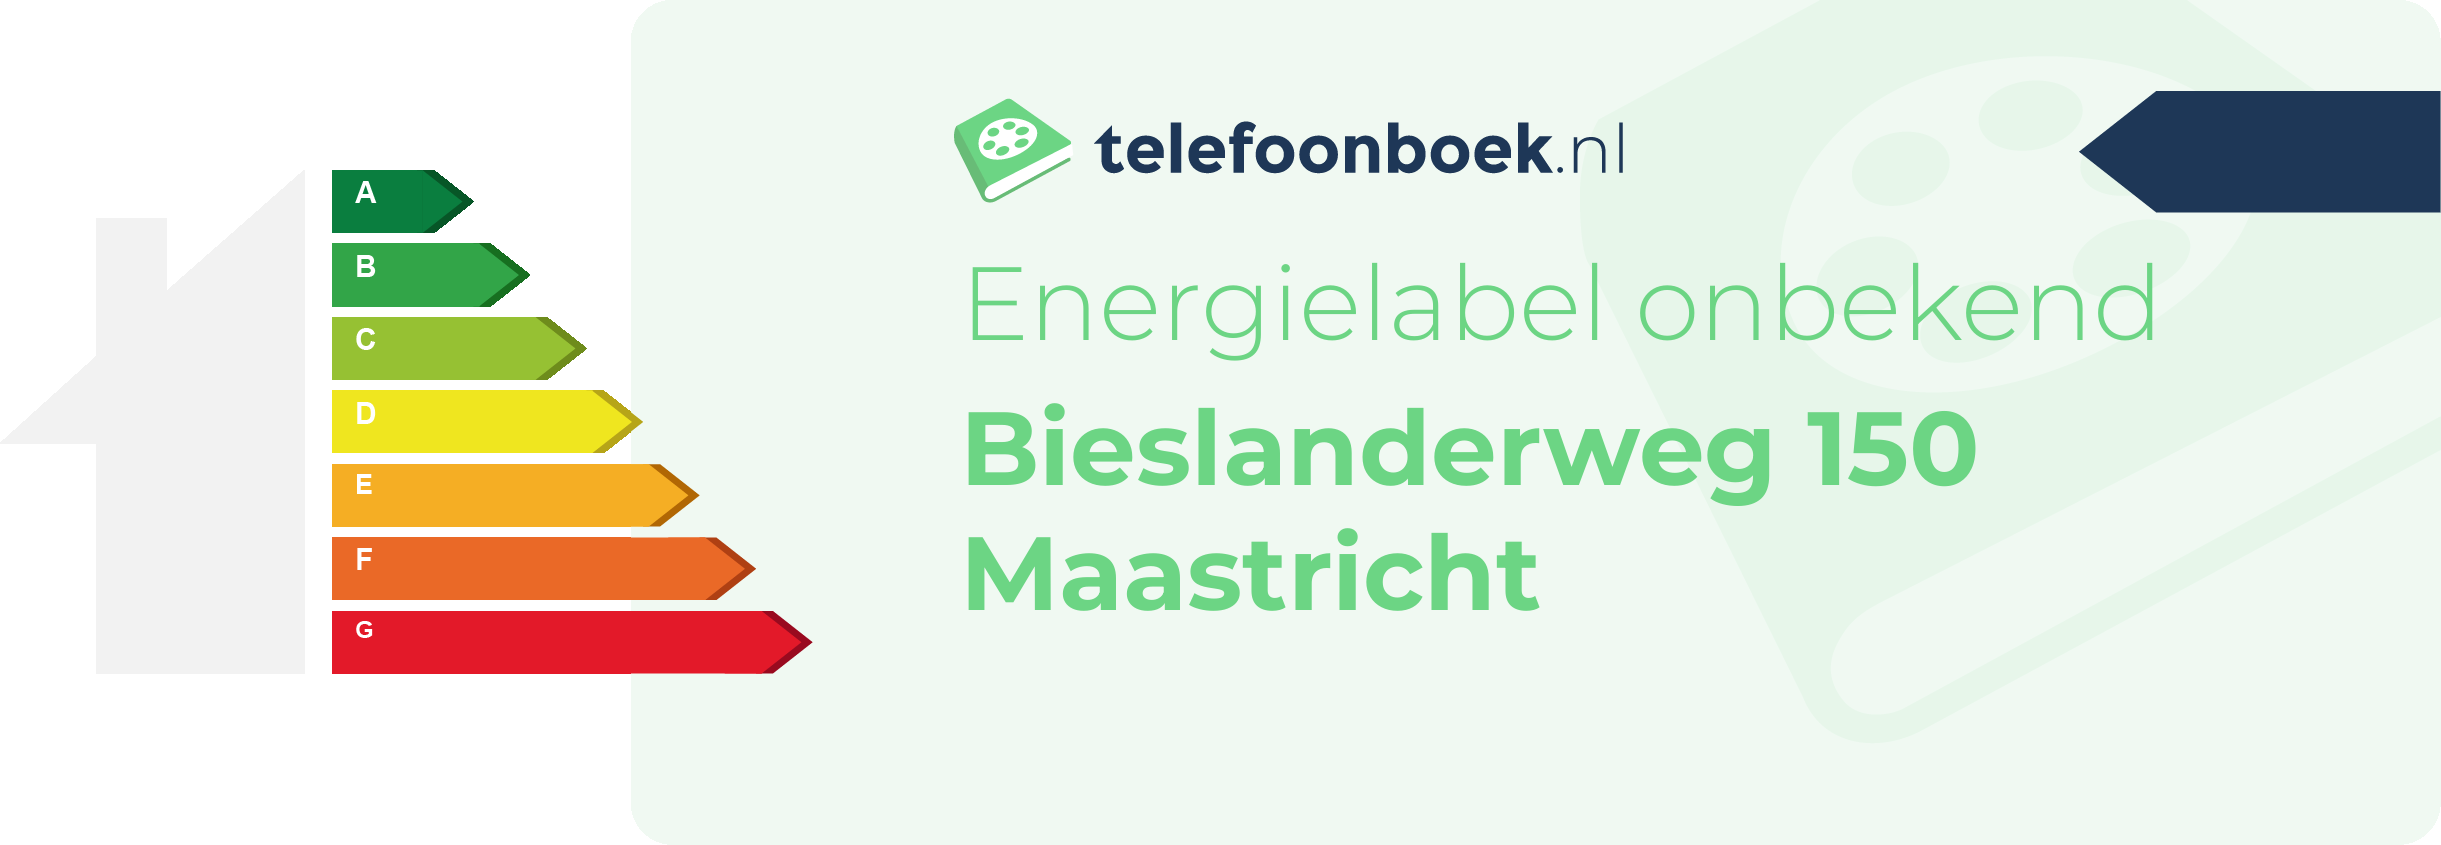 Energielabel Bieslanderweg 150 Maastricht